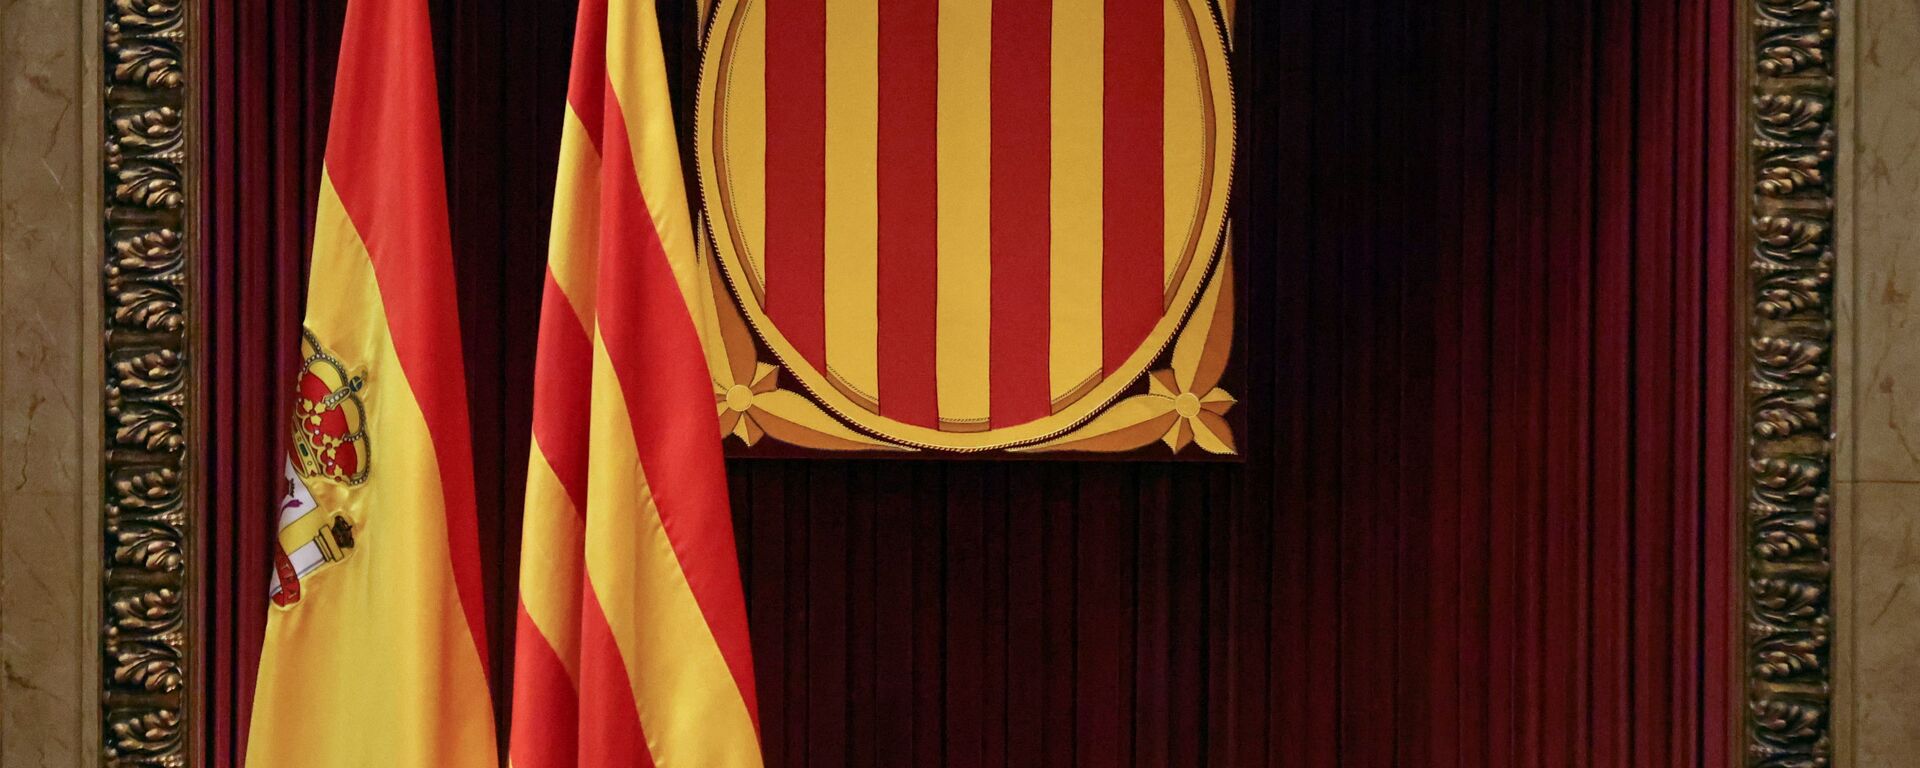 Banderas de España y Cataluña en el Parlamento catalán - Sputnik Mundo, 1920, 12.02.2021